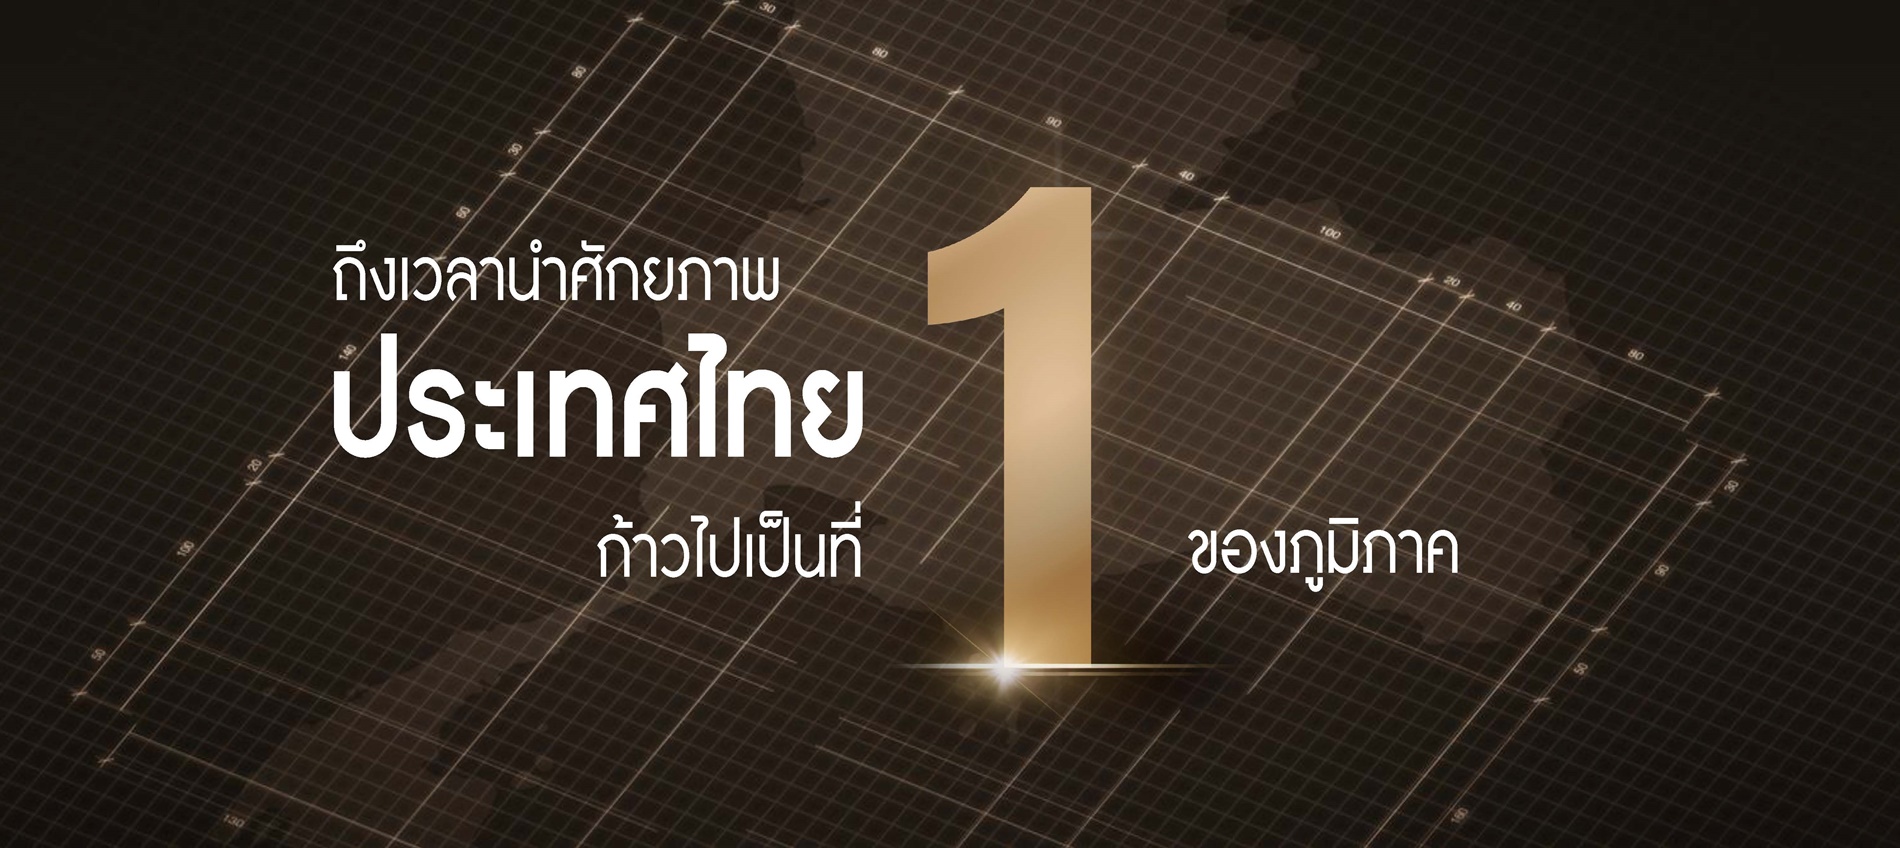 นายกฯ เศรษฐา ประกาศวิสัยทัศน์ Thailand Vision “IGNITE THAILAND จุดพลัง รวมใจ ไทยต้องเป็นหนึ่ง”